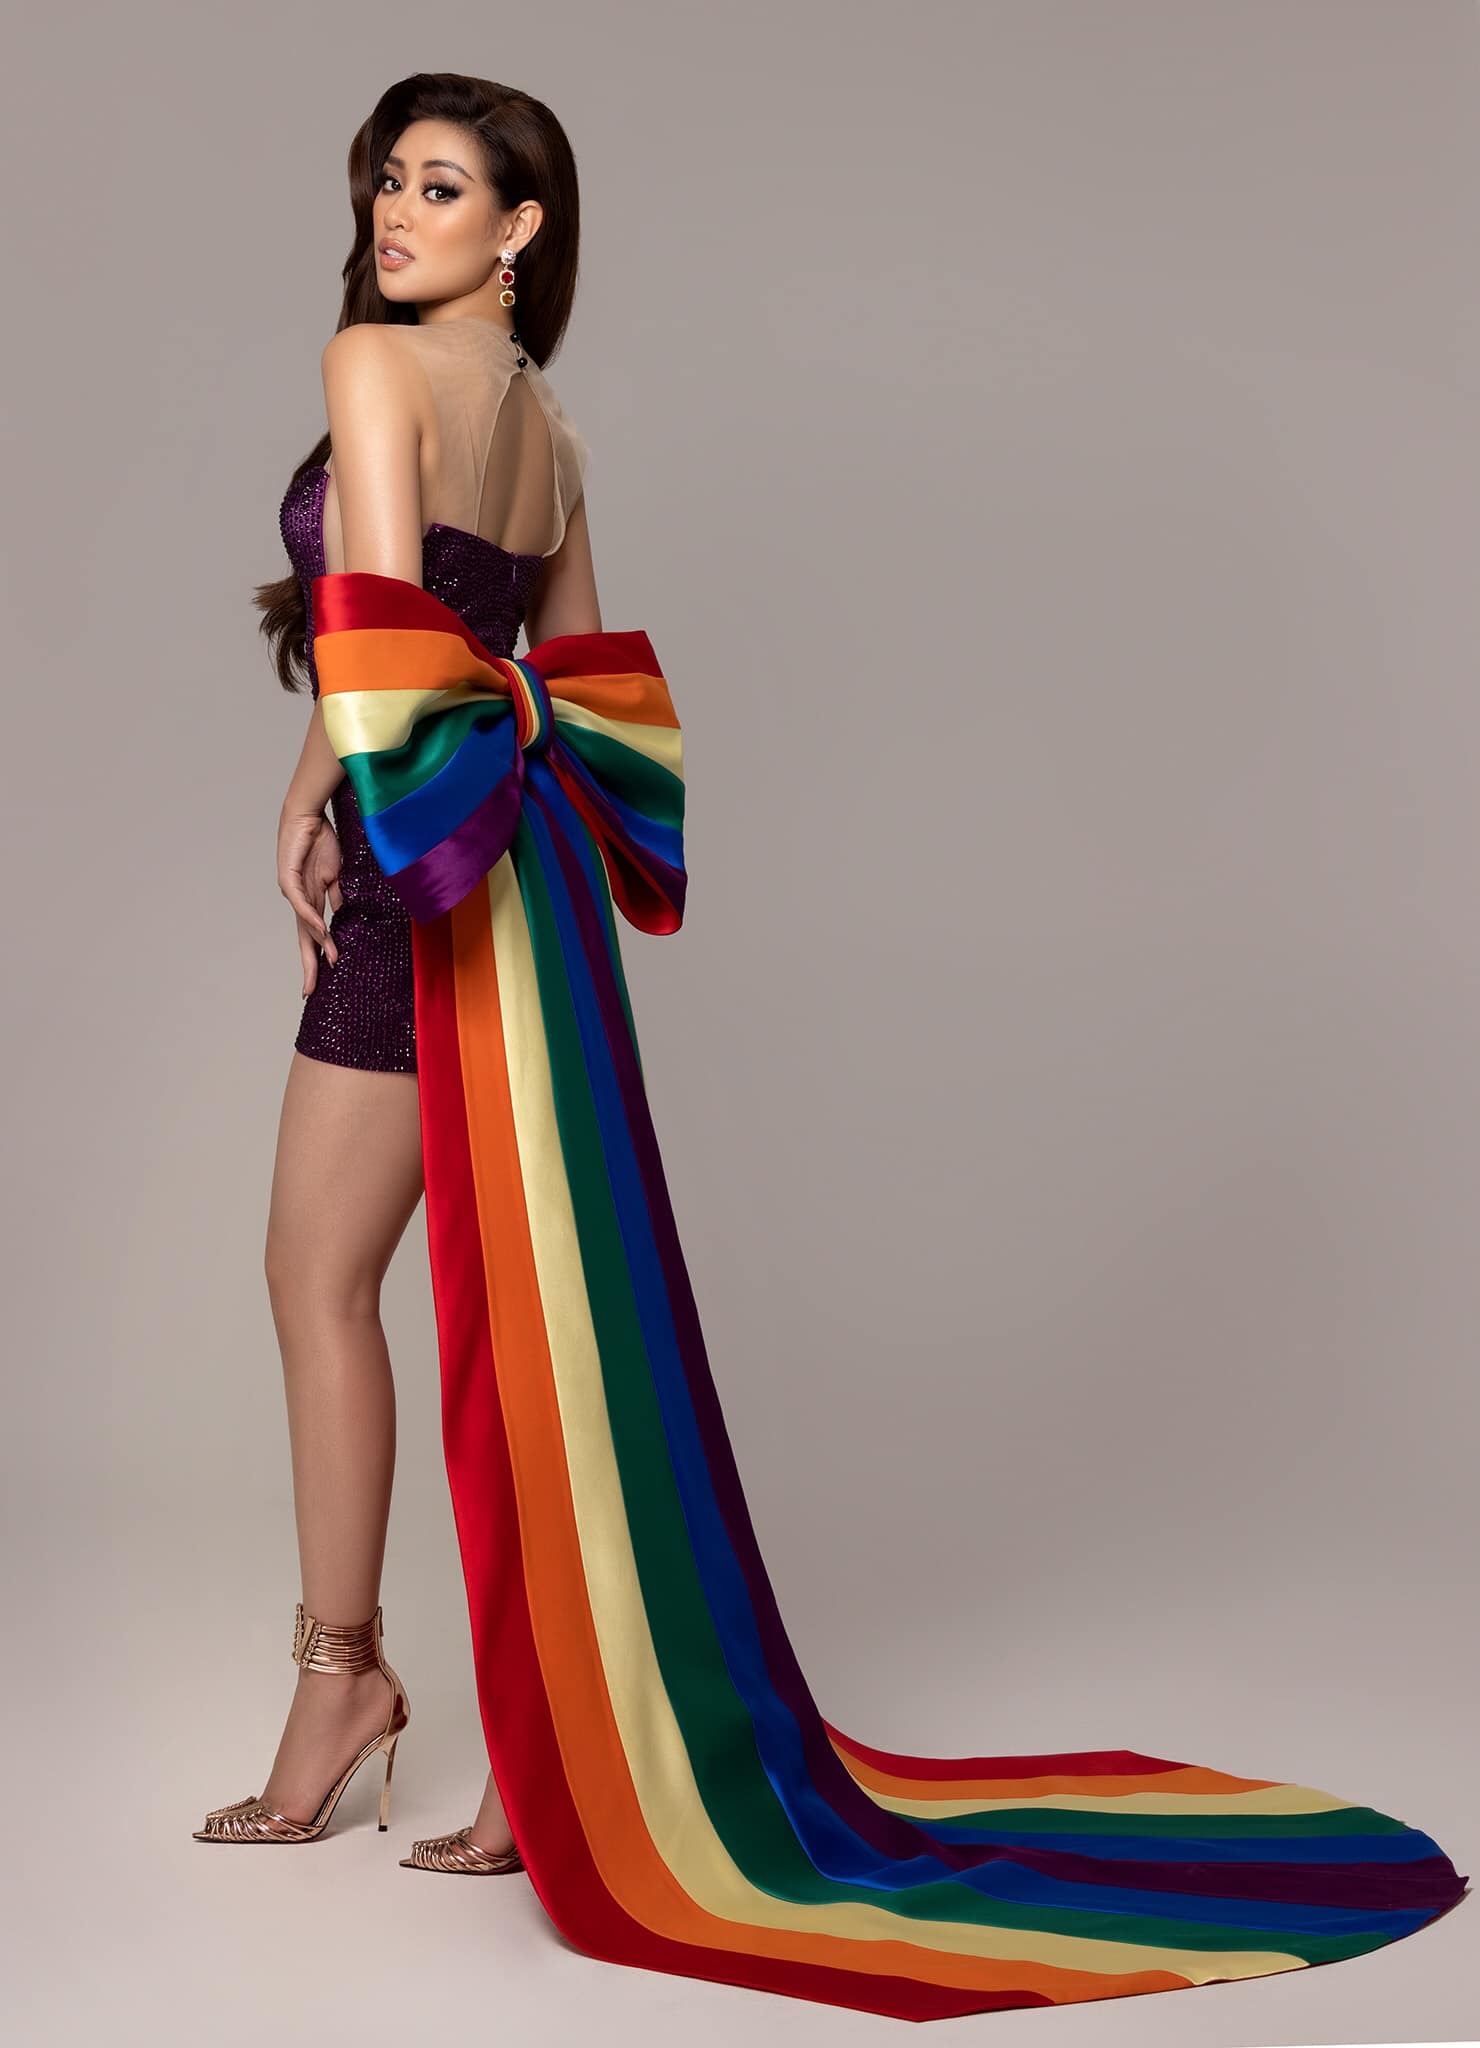 Hoa hậu Khánh Vân chuộng váy áo làm từ cờ lục sắc LGBT